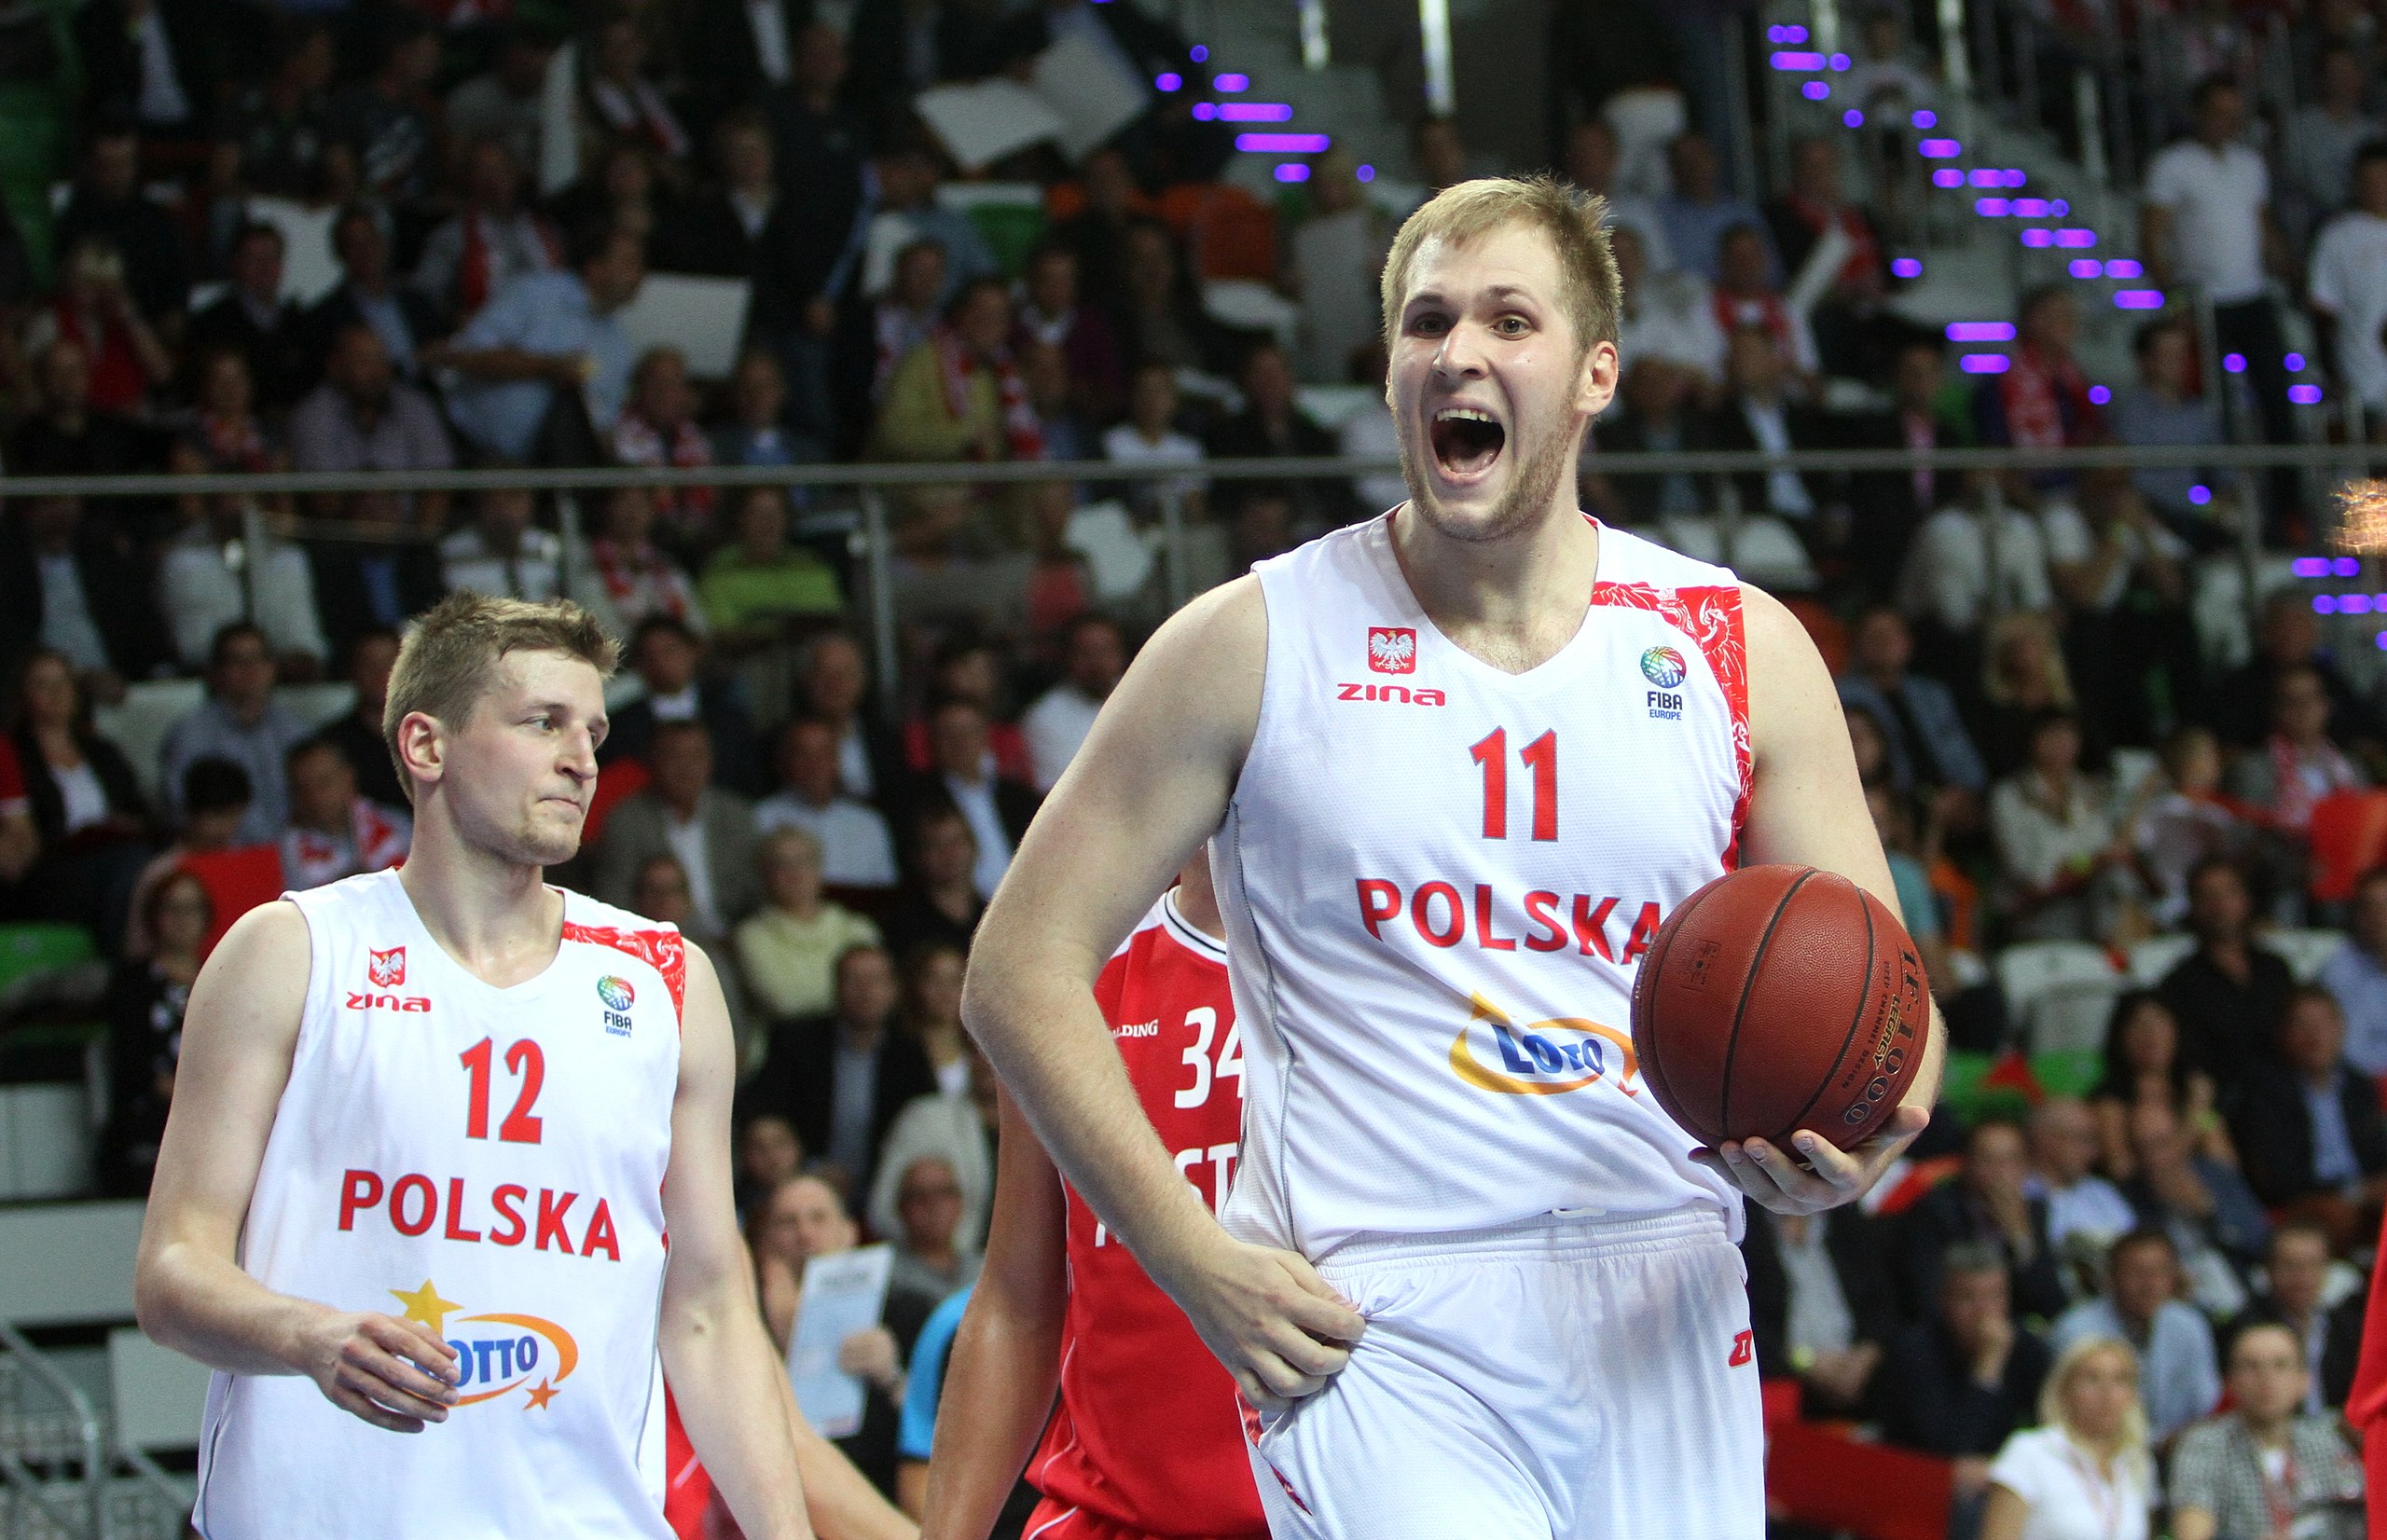 Bank Pekao S.A. zaangażuje się w sponsorowanie całej polskiej koszykówki!